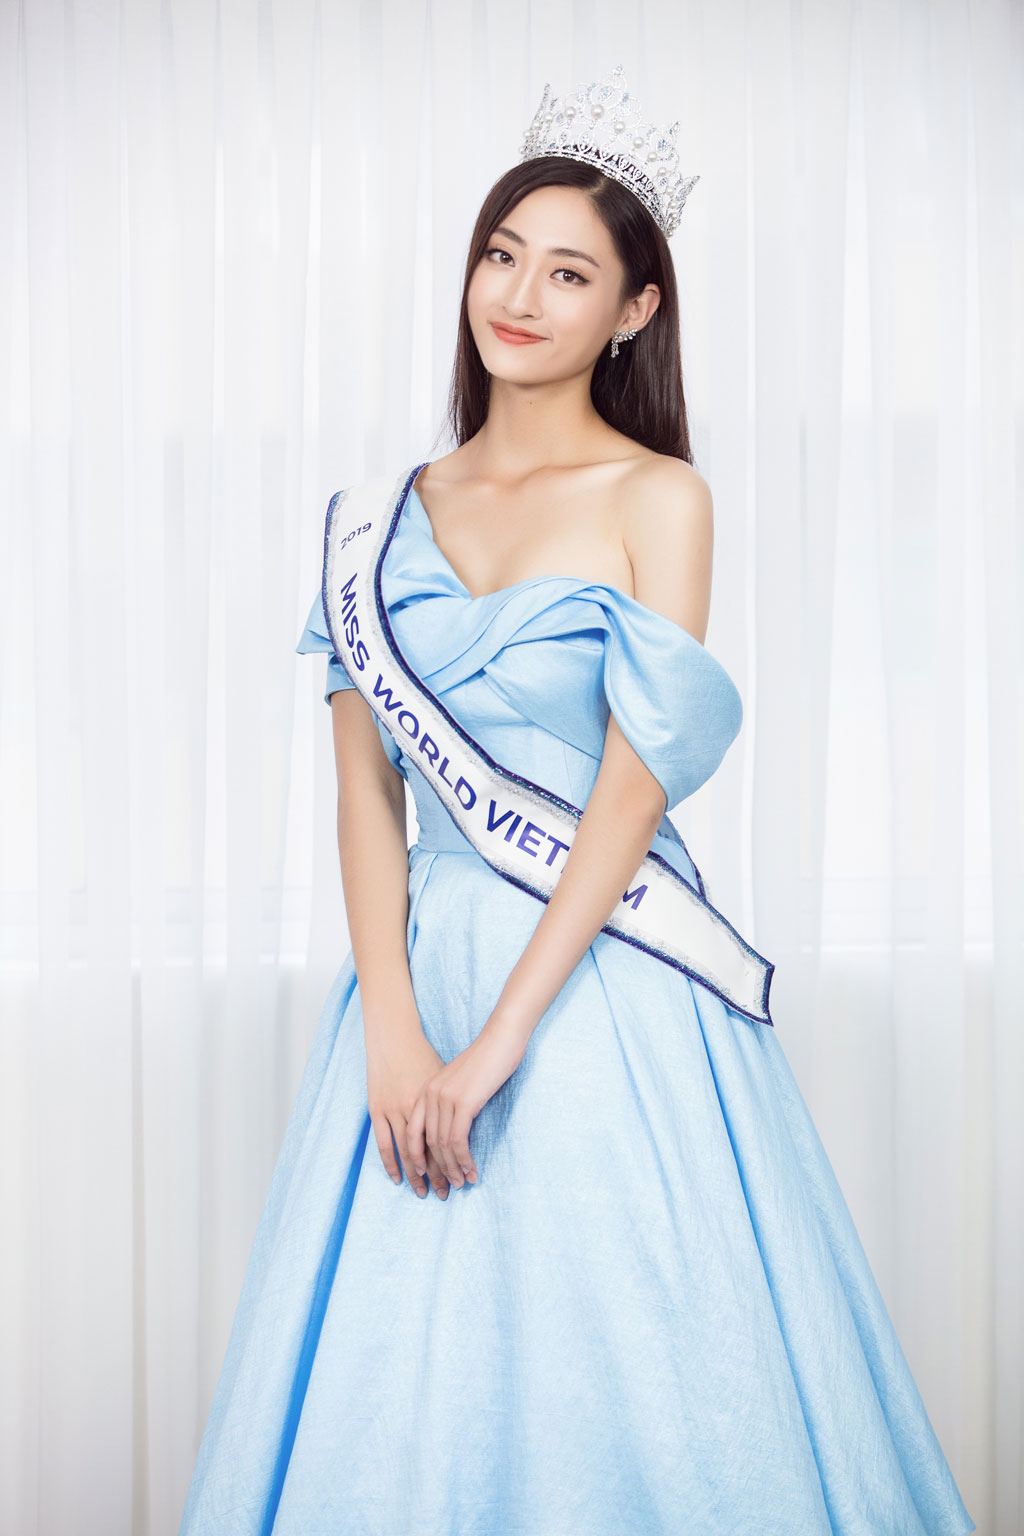 Trang chủ Miss World khen ngợi tân Hoa hậu Lương Thùy Linh4